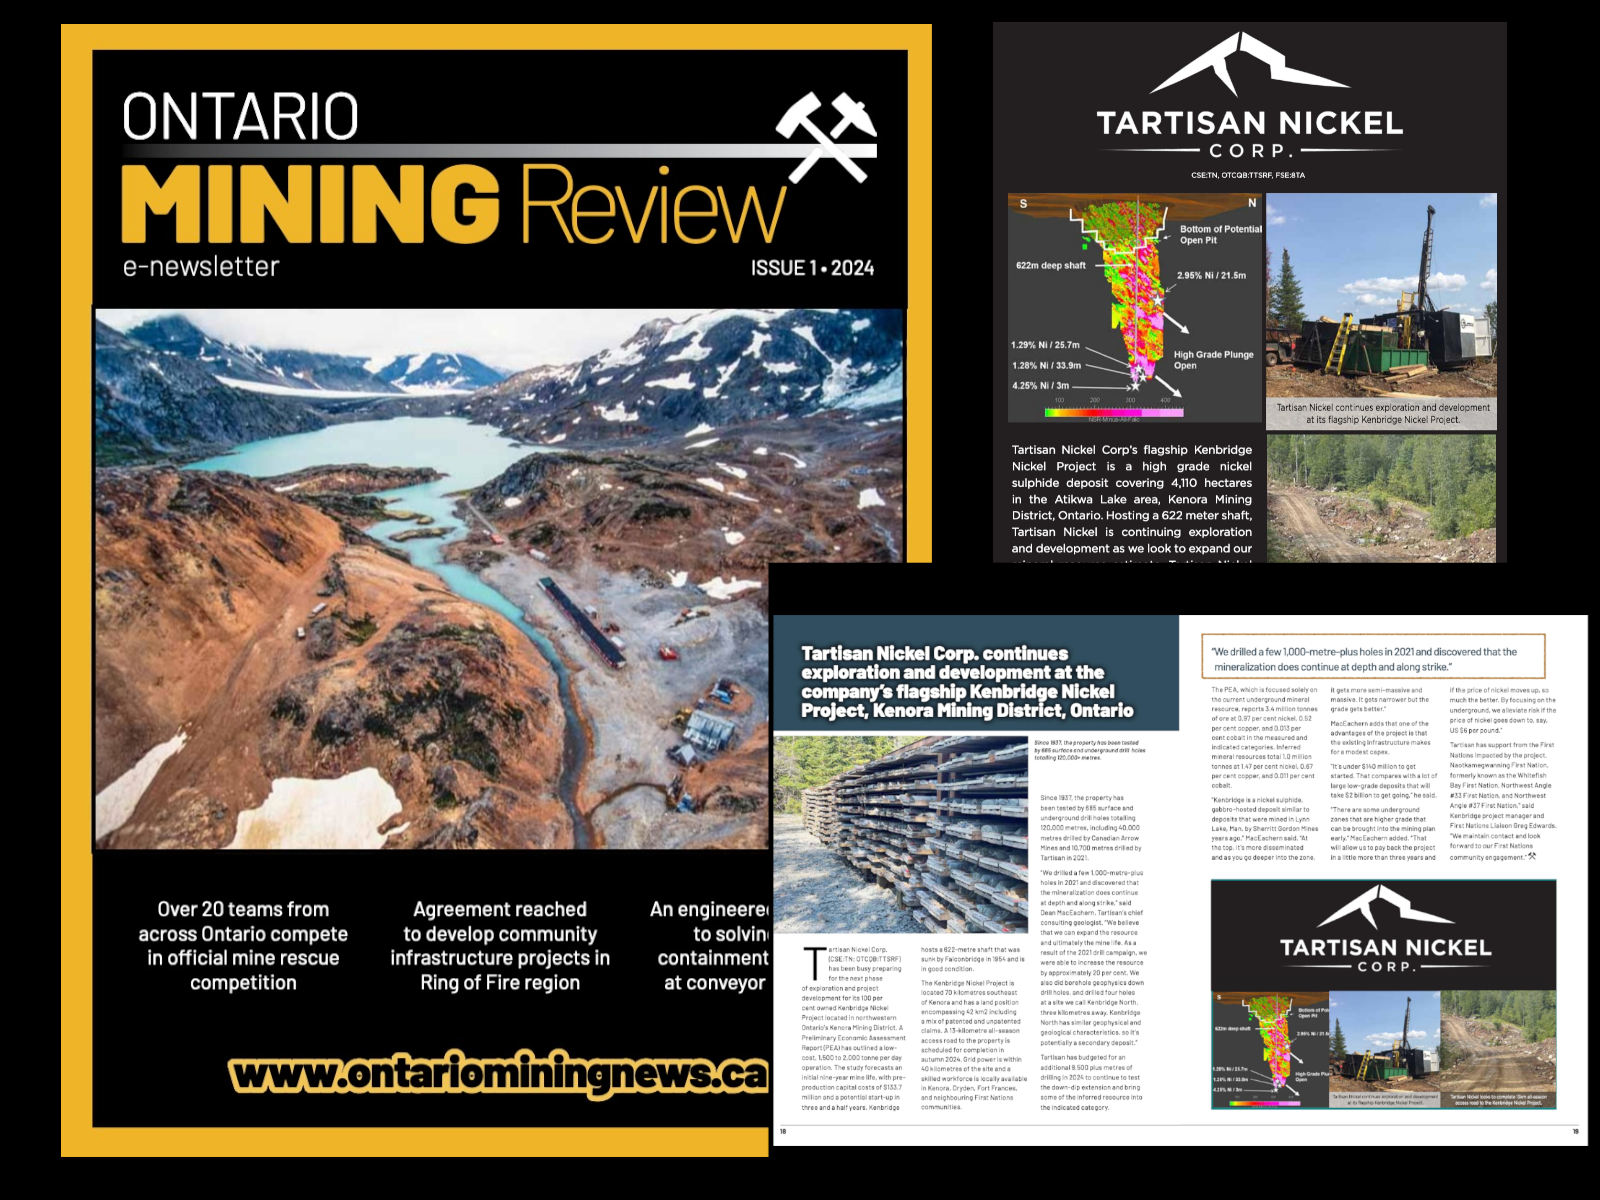 Tartisan-Nickel-ontario-mining-review